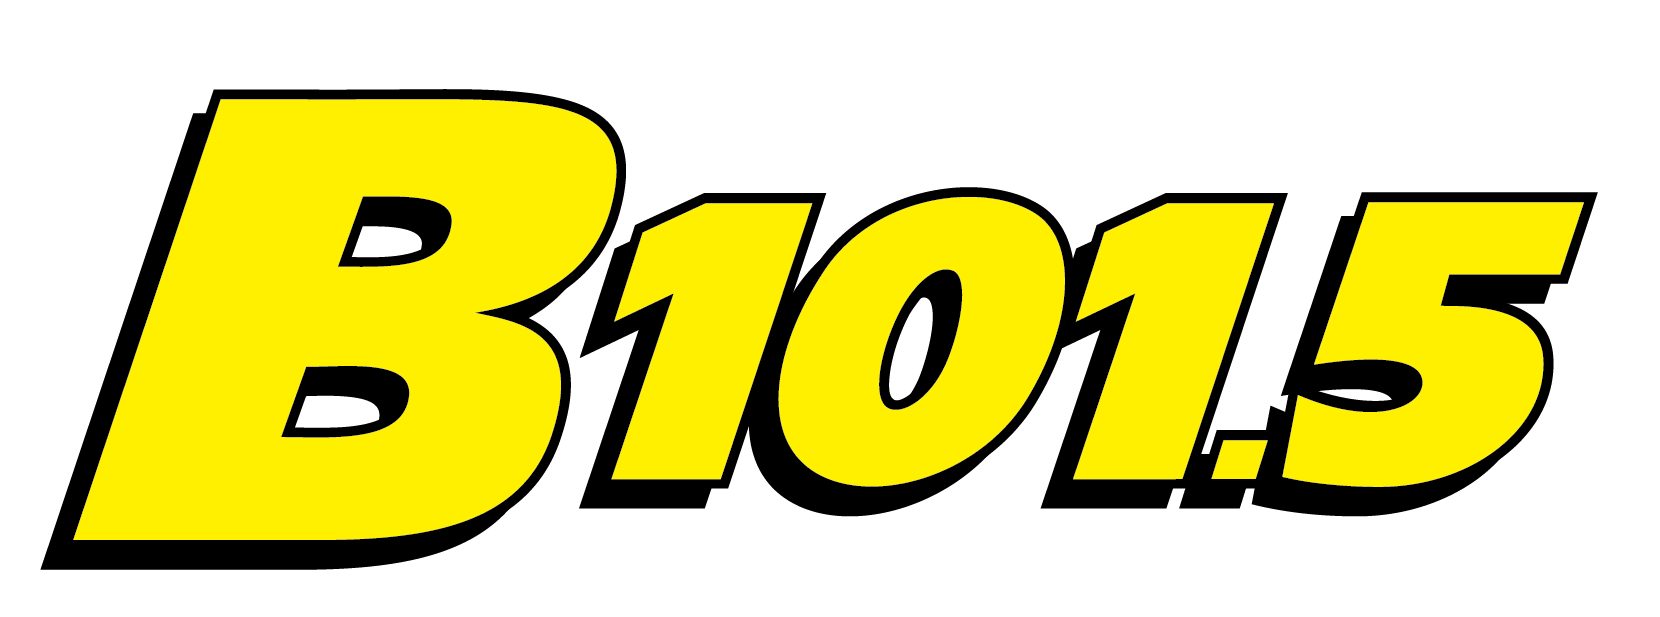 Image for sponsor B101.5